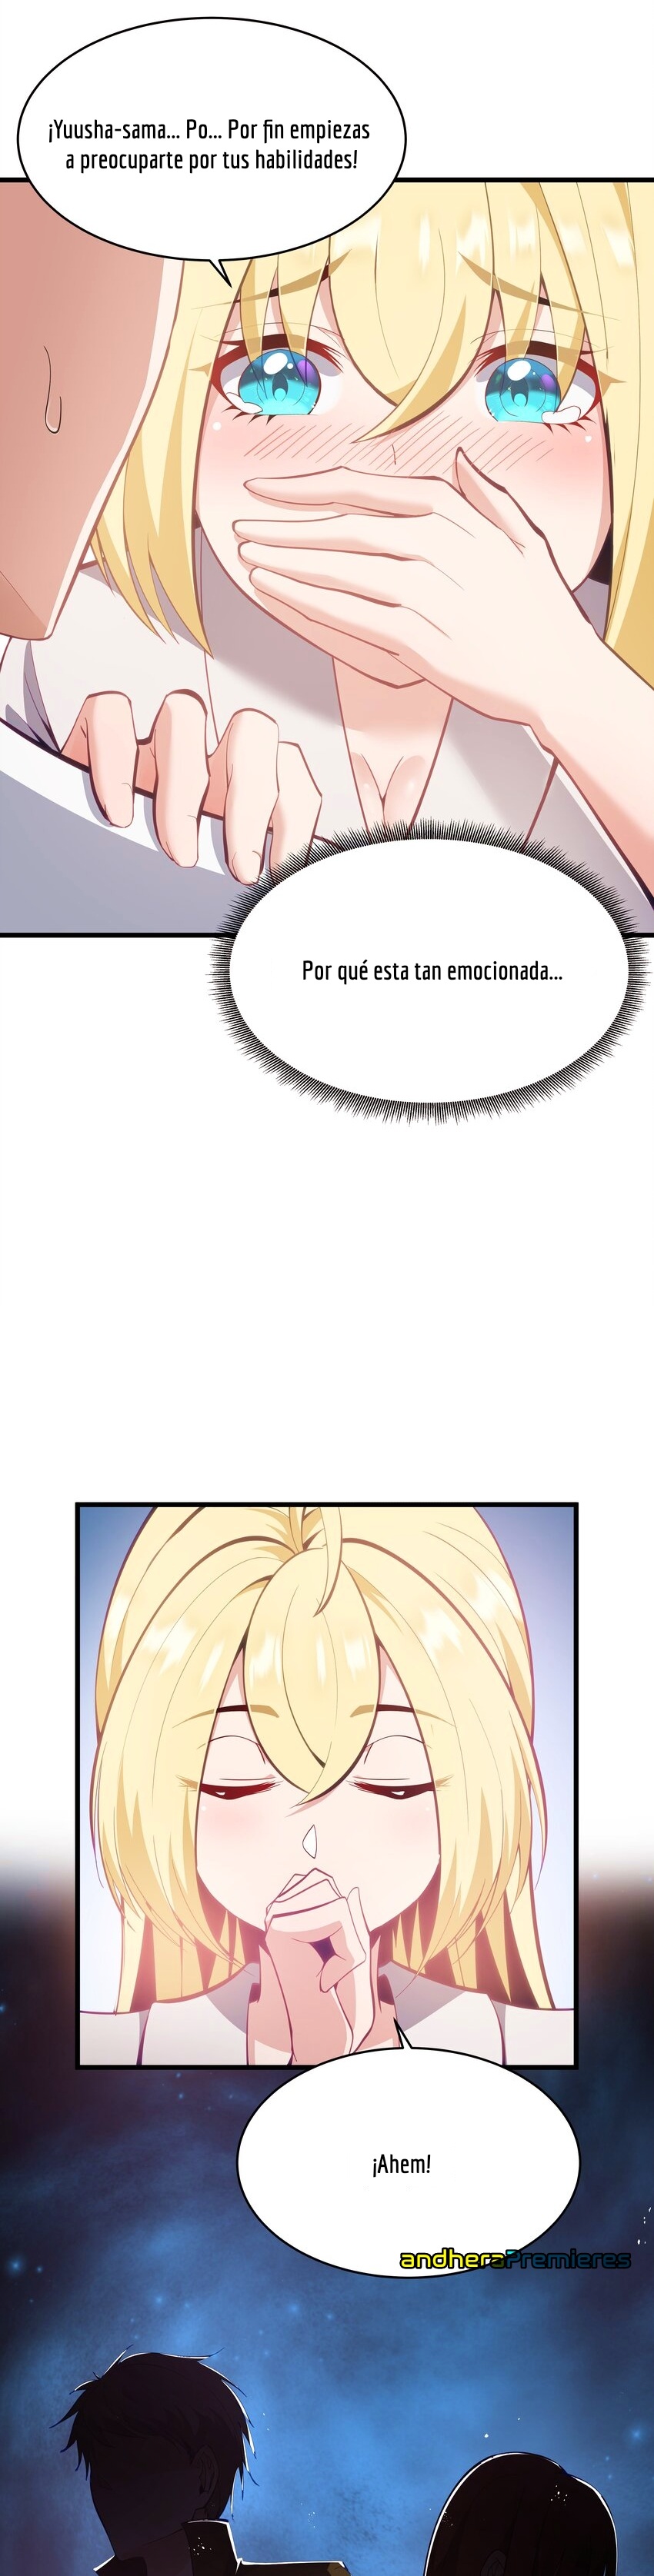 Manga El Héroe de la Avaricia Chapter 6 image number 15